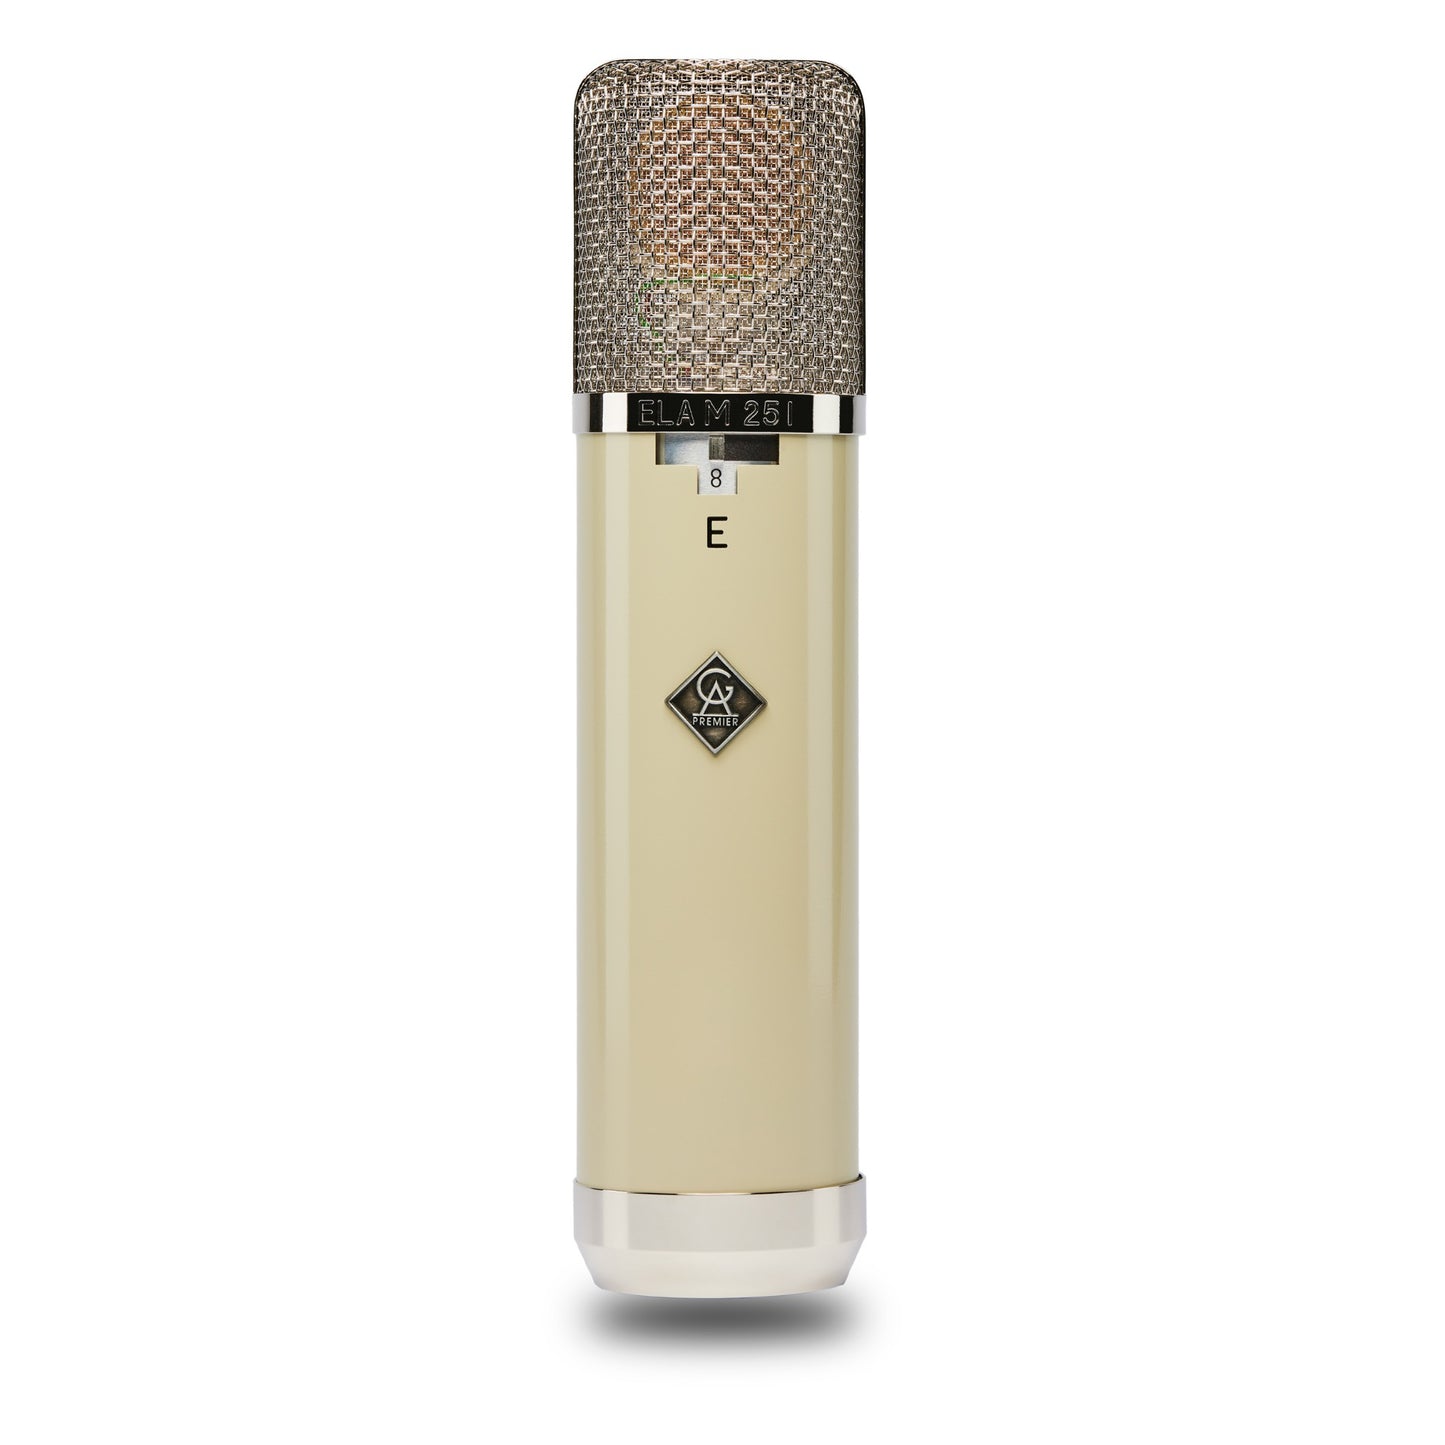 Golden Age Premier ELAM251E - Premier Vintage German Microphone Recreation